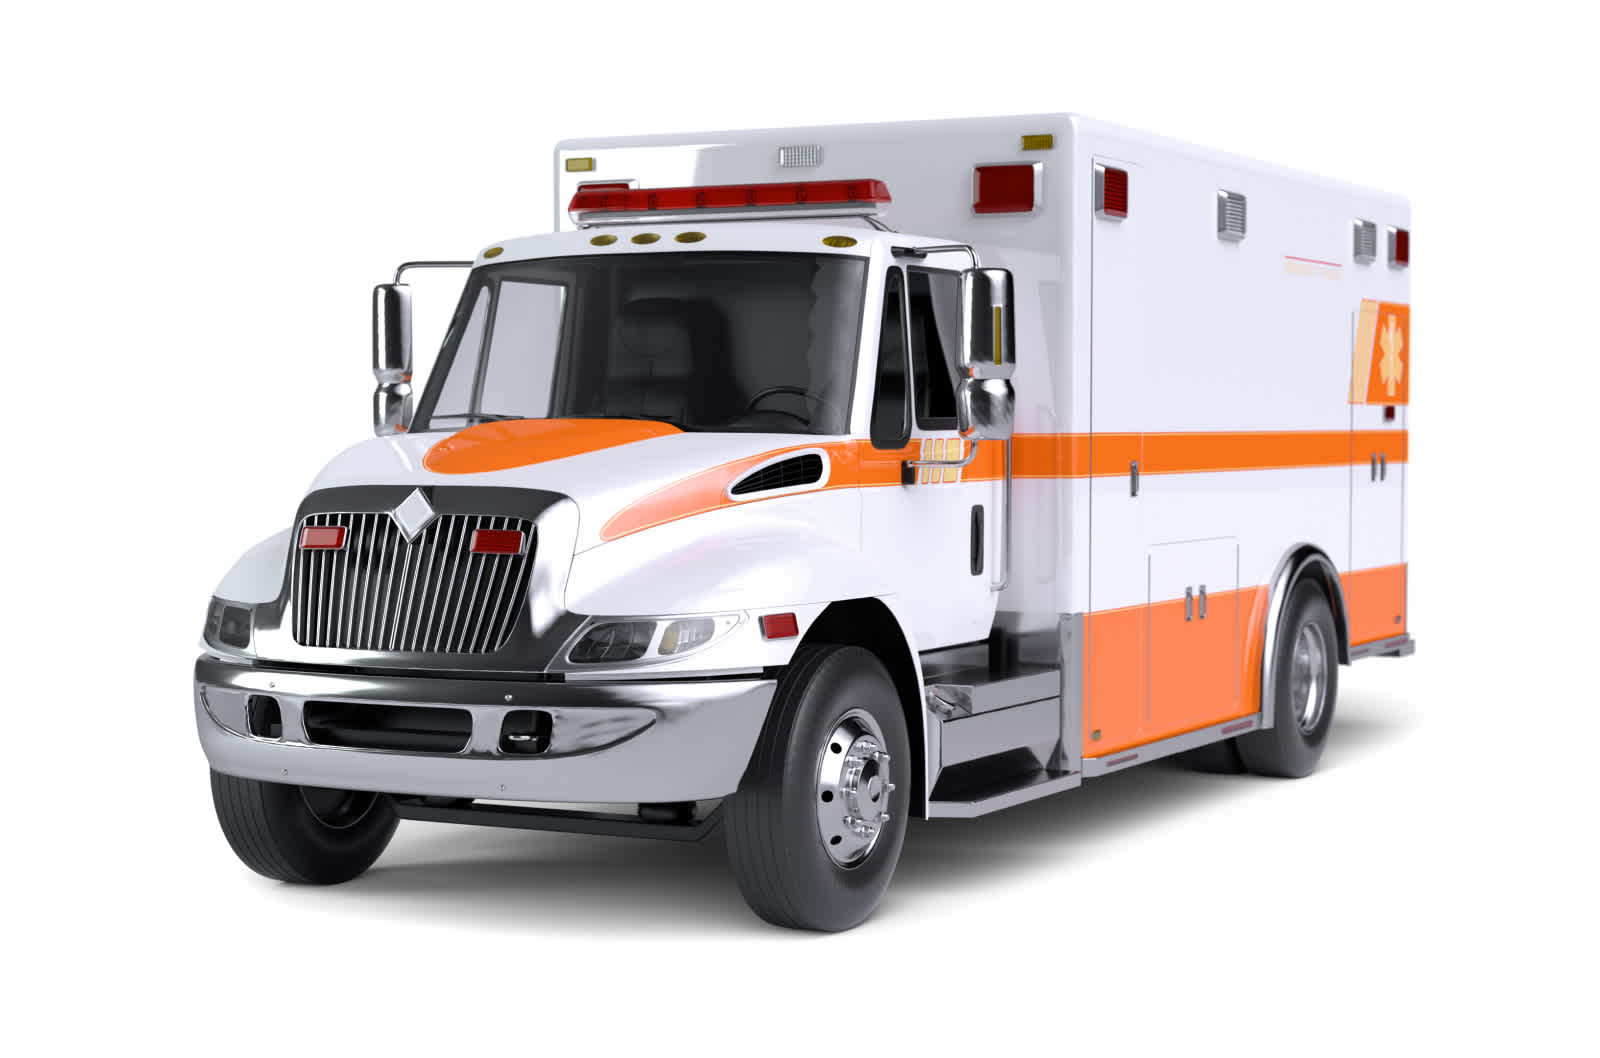 White ambulance with orange stripes